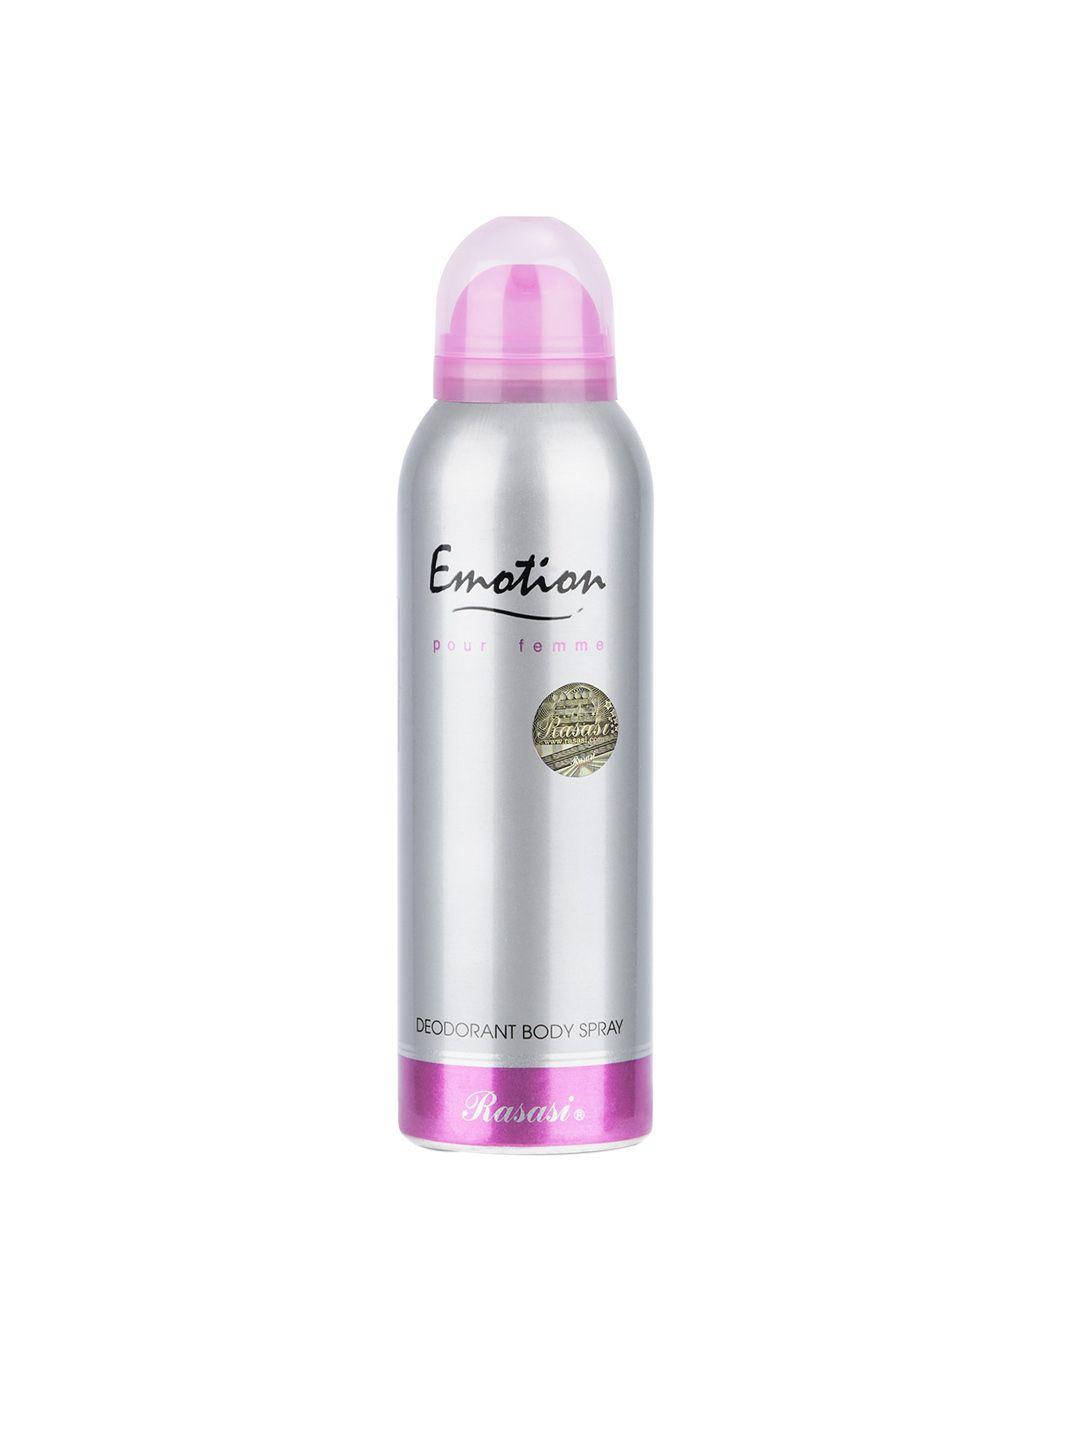 rasasi women emotion pour femme deodorant body spray - 200 ml